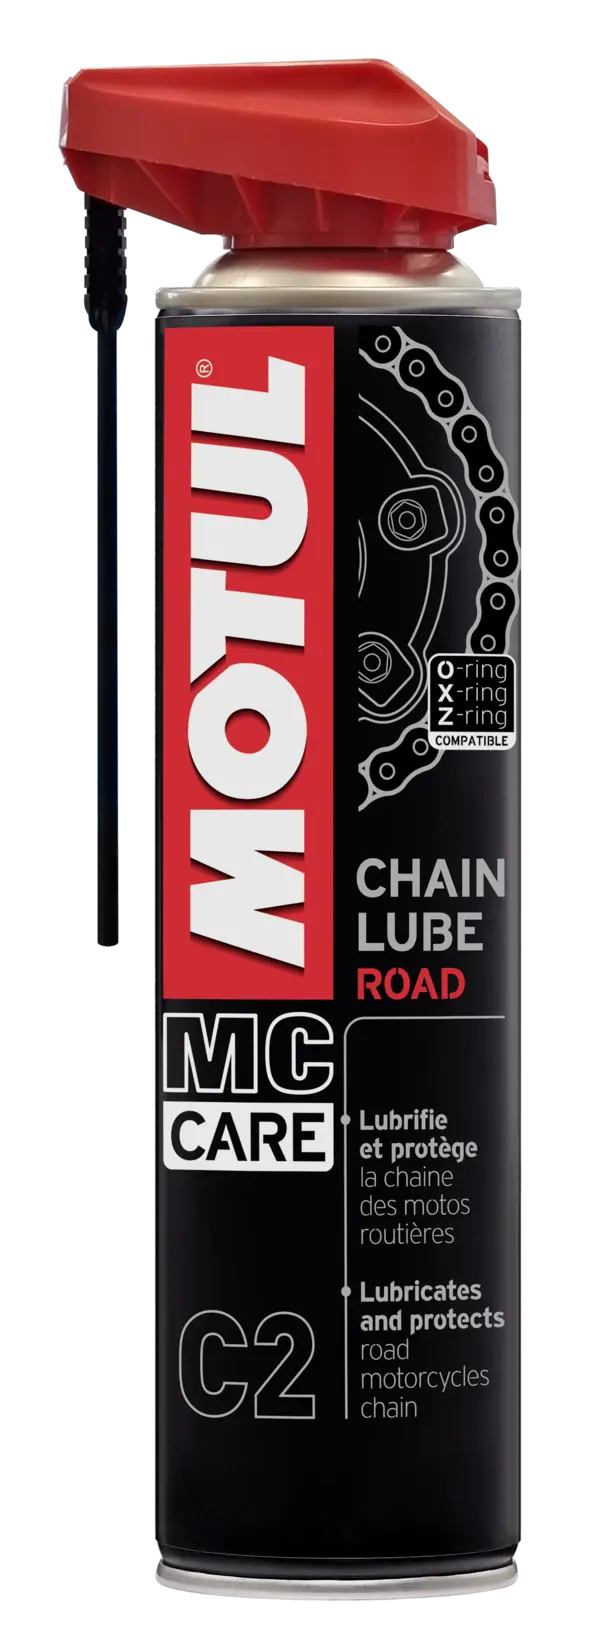 Chain Lube Road MC Care C2 Motul Graisse Chaîne Moto